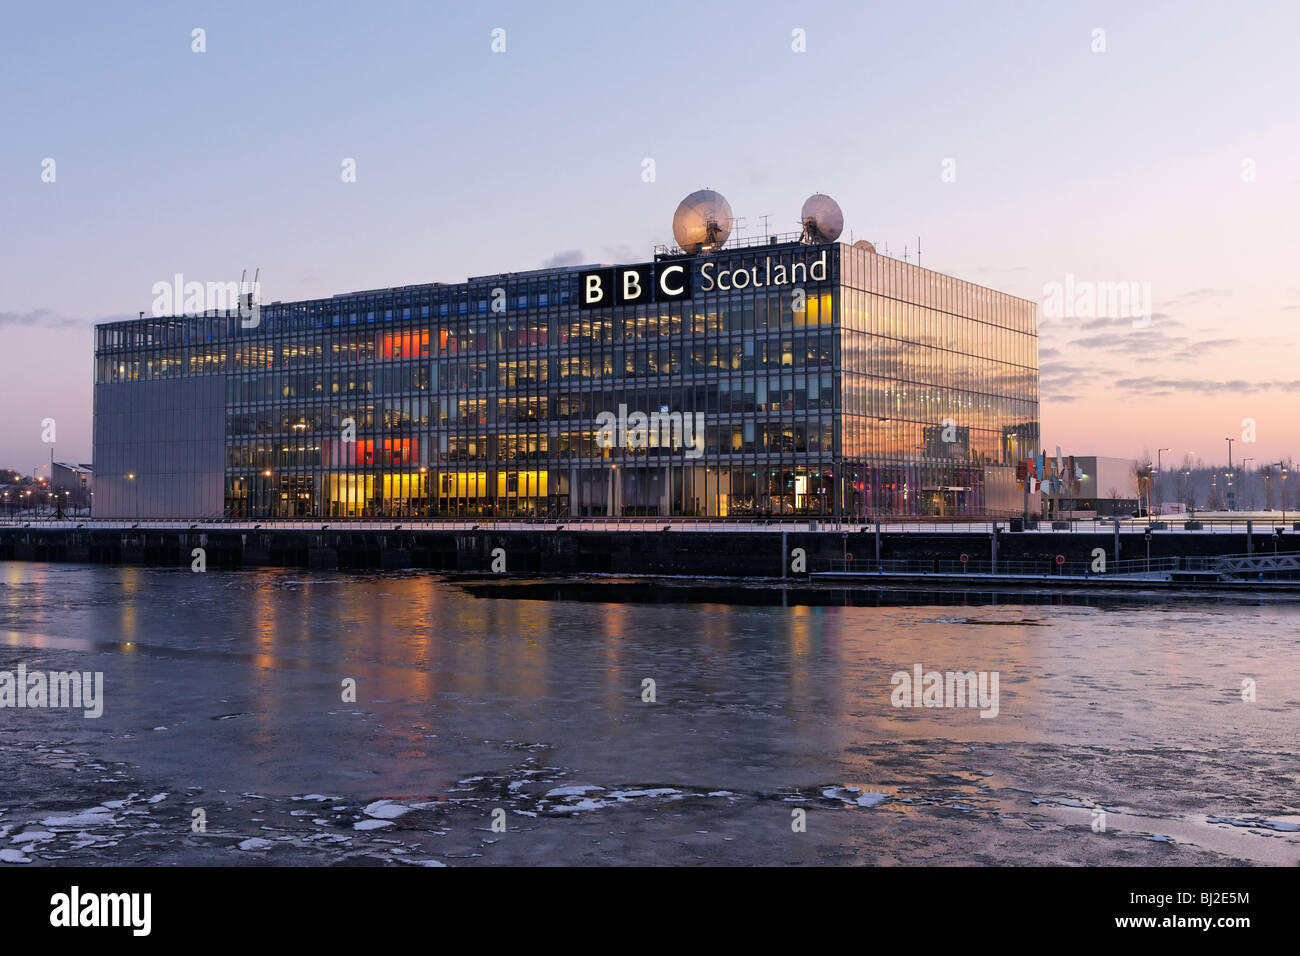 La BBC Scotland siège le Pacific Quay et la rivière gelée, Clyde Glasgow, Écosse, Royaume-Uni Banque D'Images